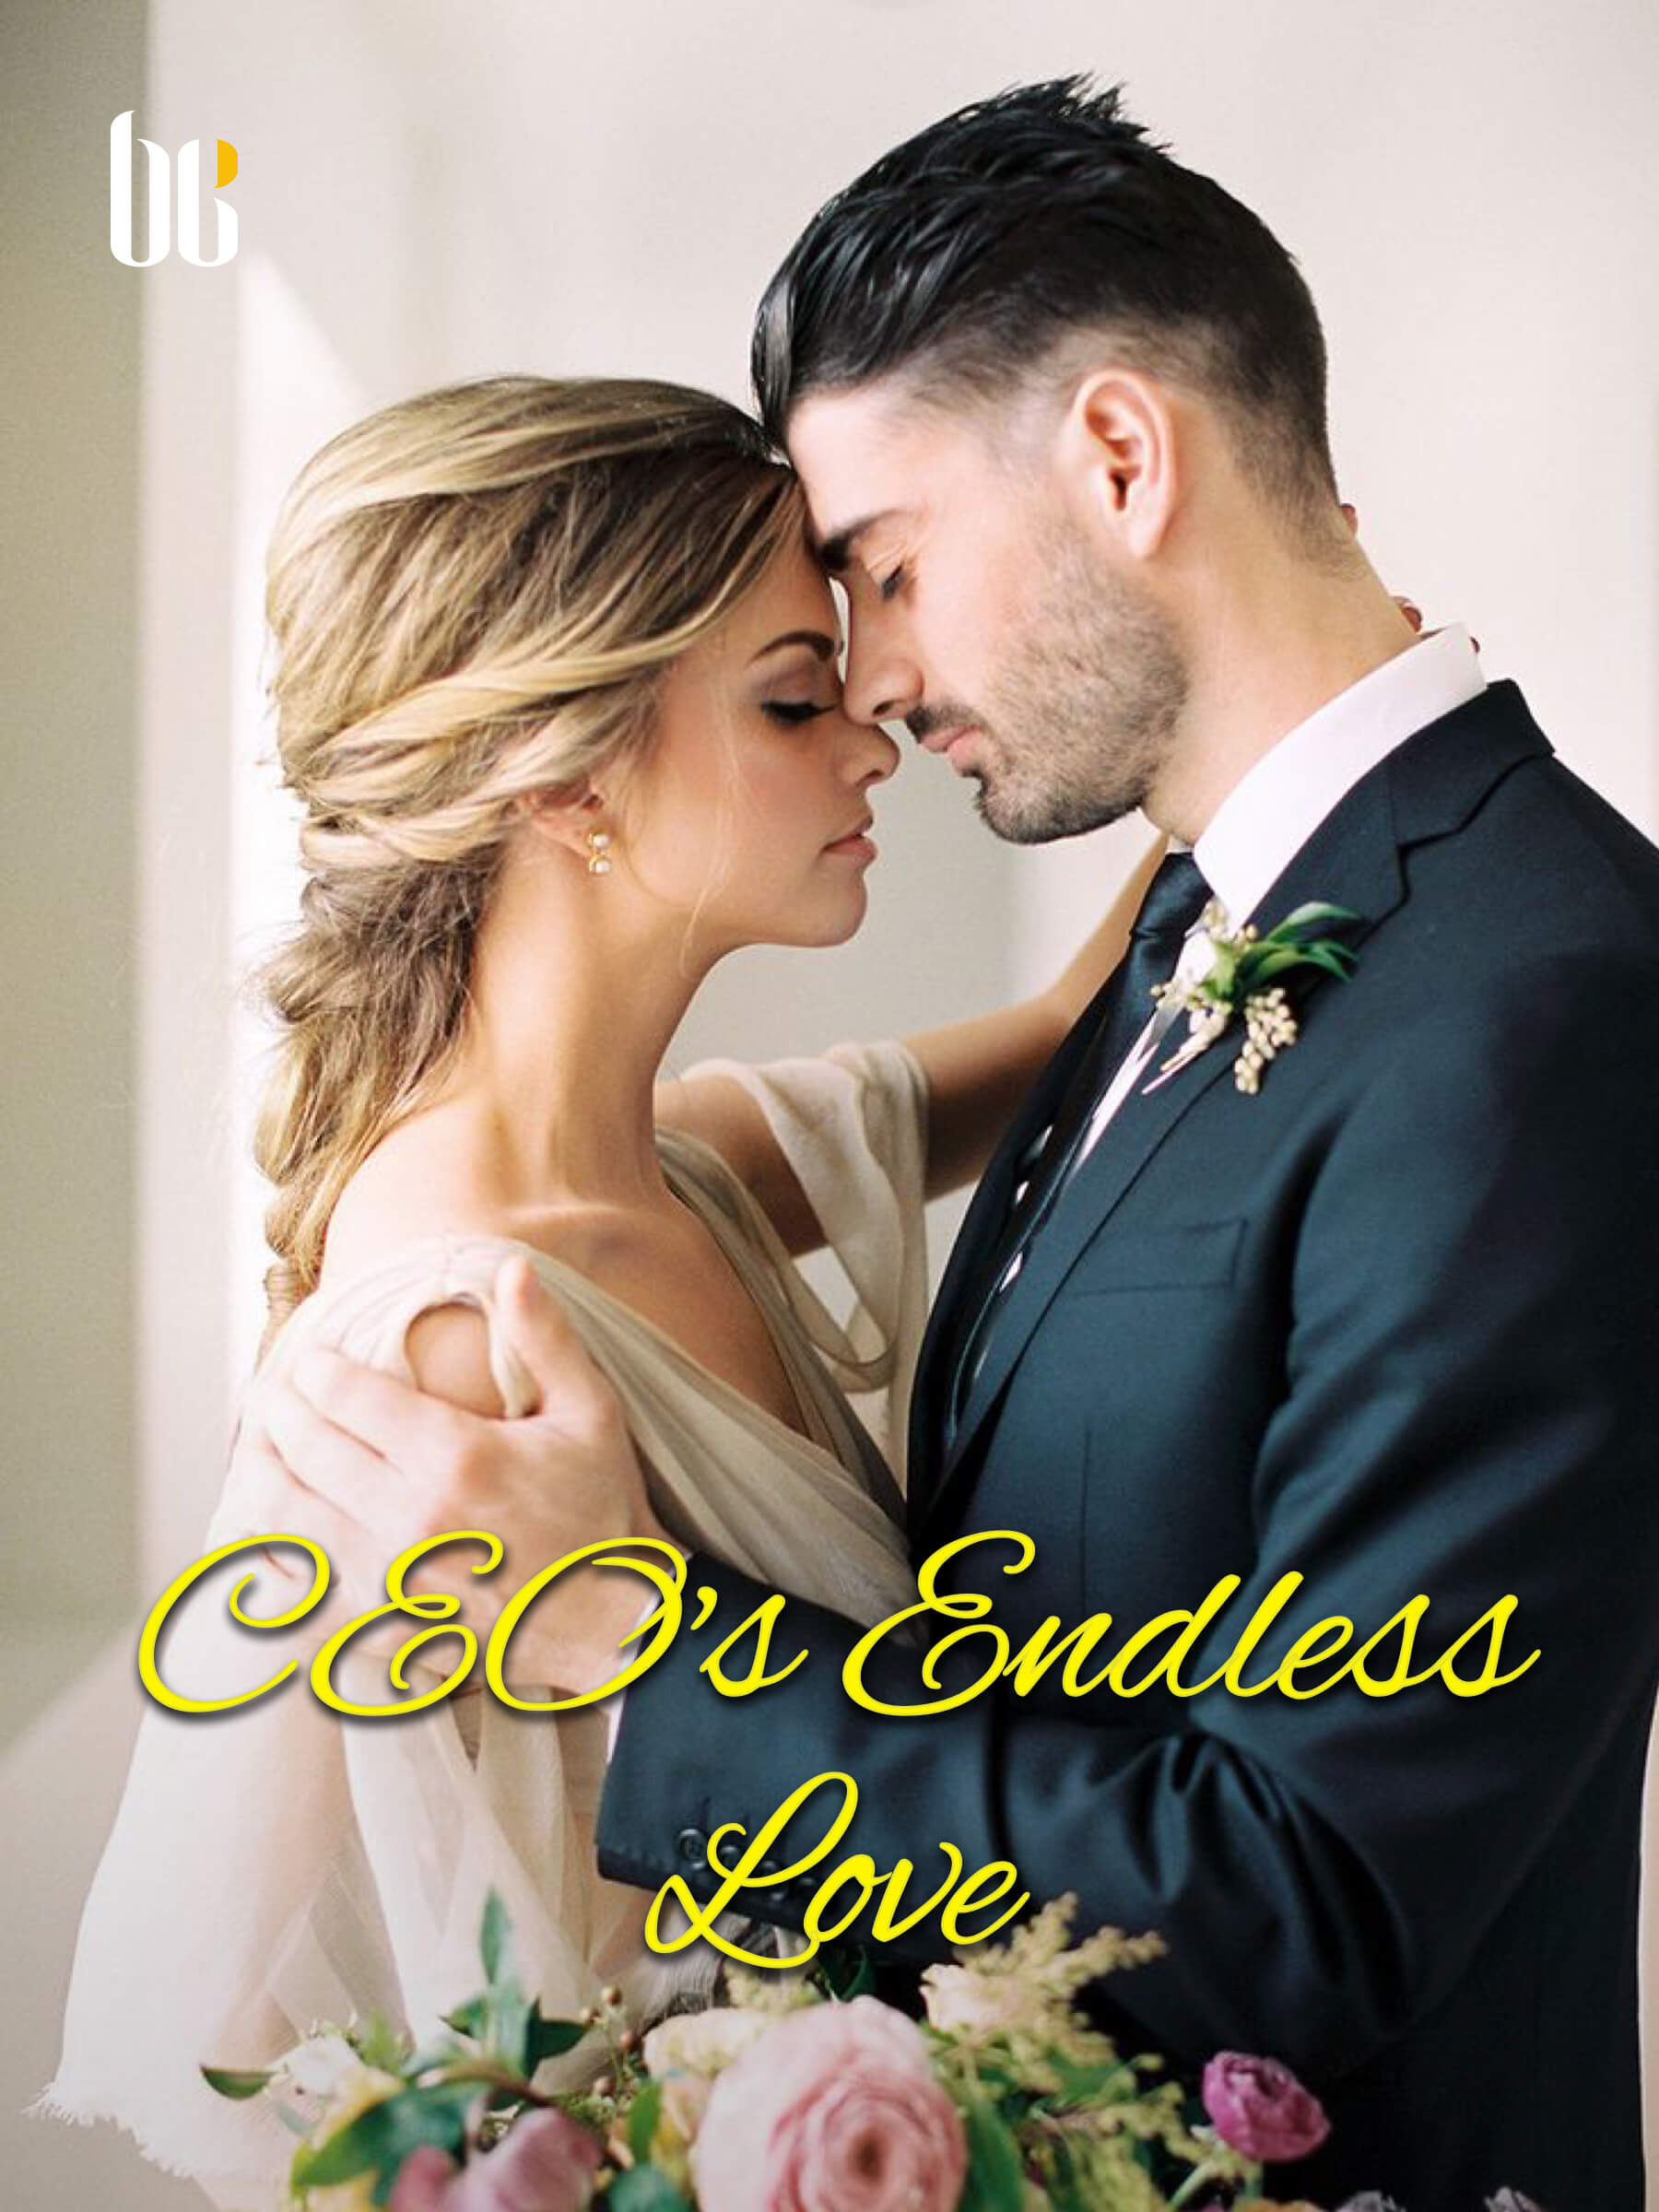 CEO's Endless Love Novel Full Story